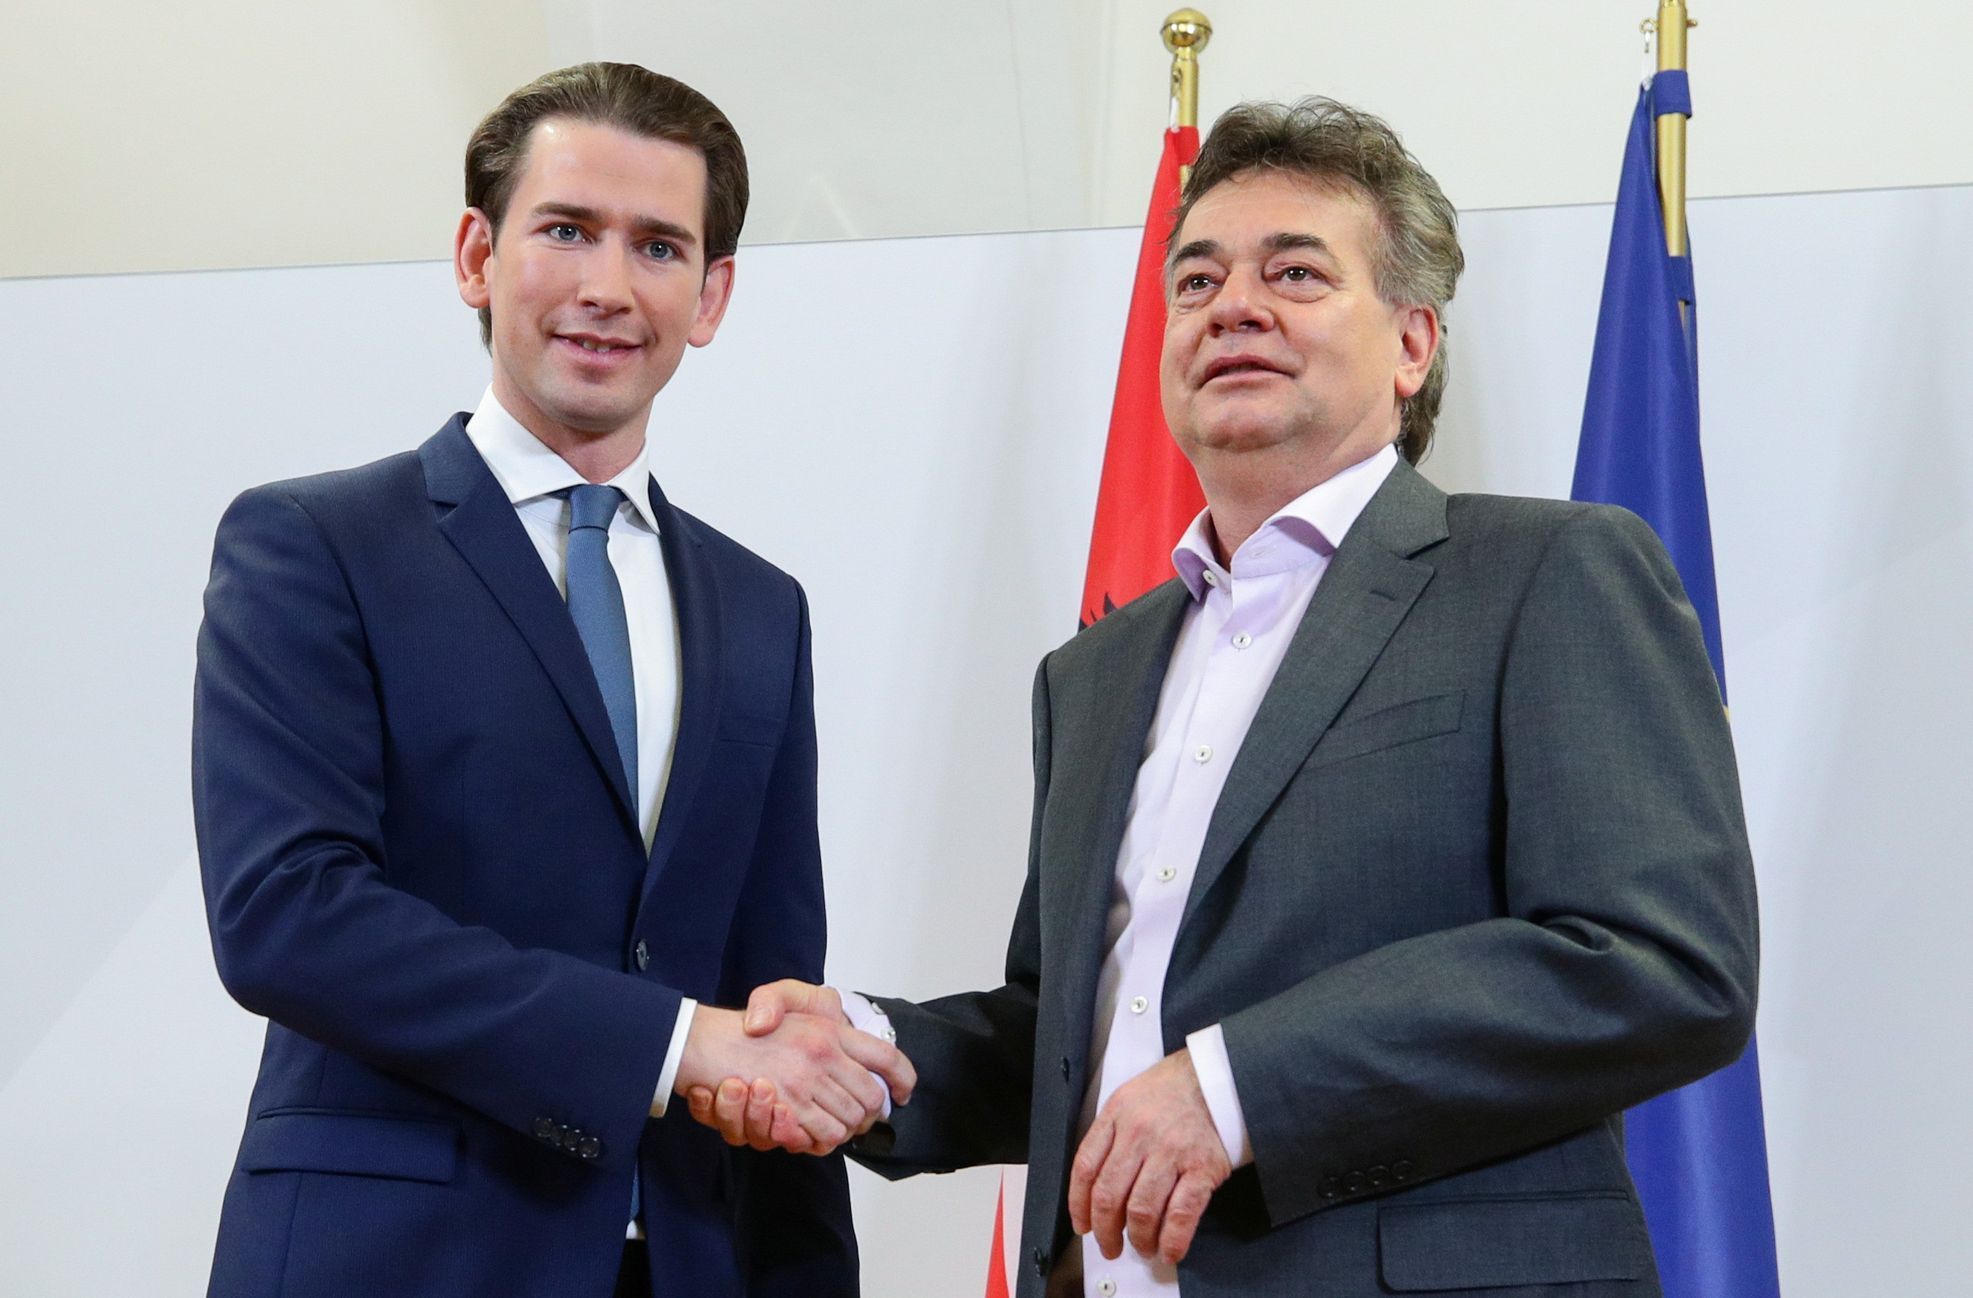 Předseda rakouských lidovců (ÖVP) Sebastian Kurz a šéf zelených Werner Kogler